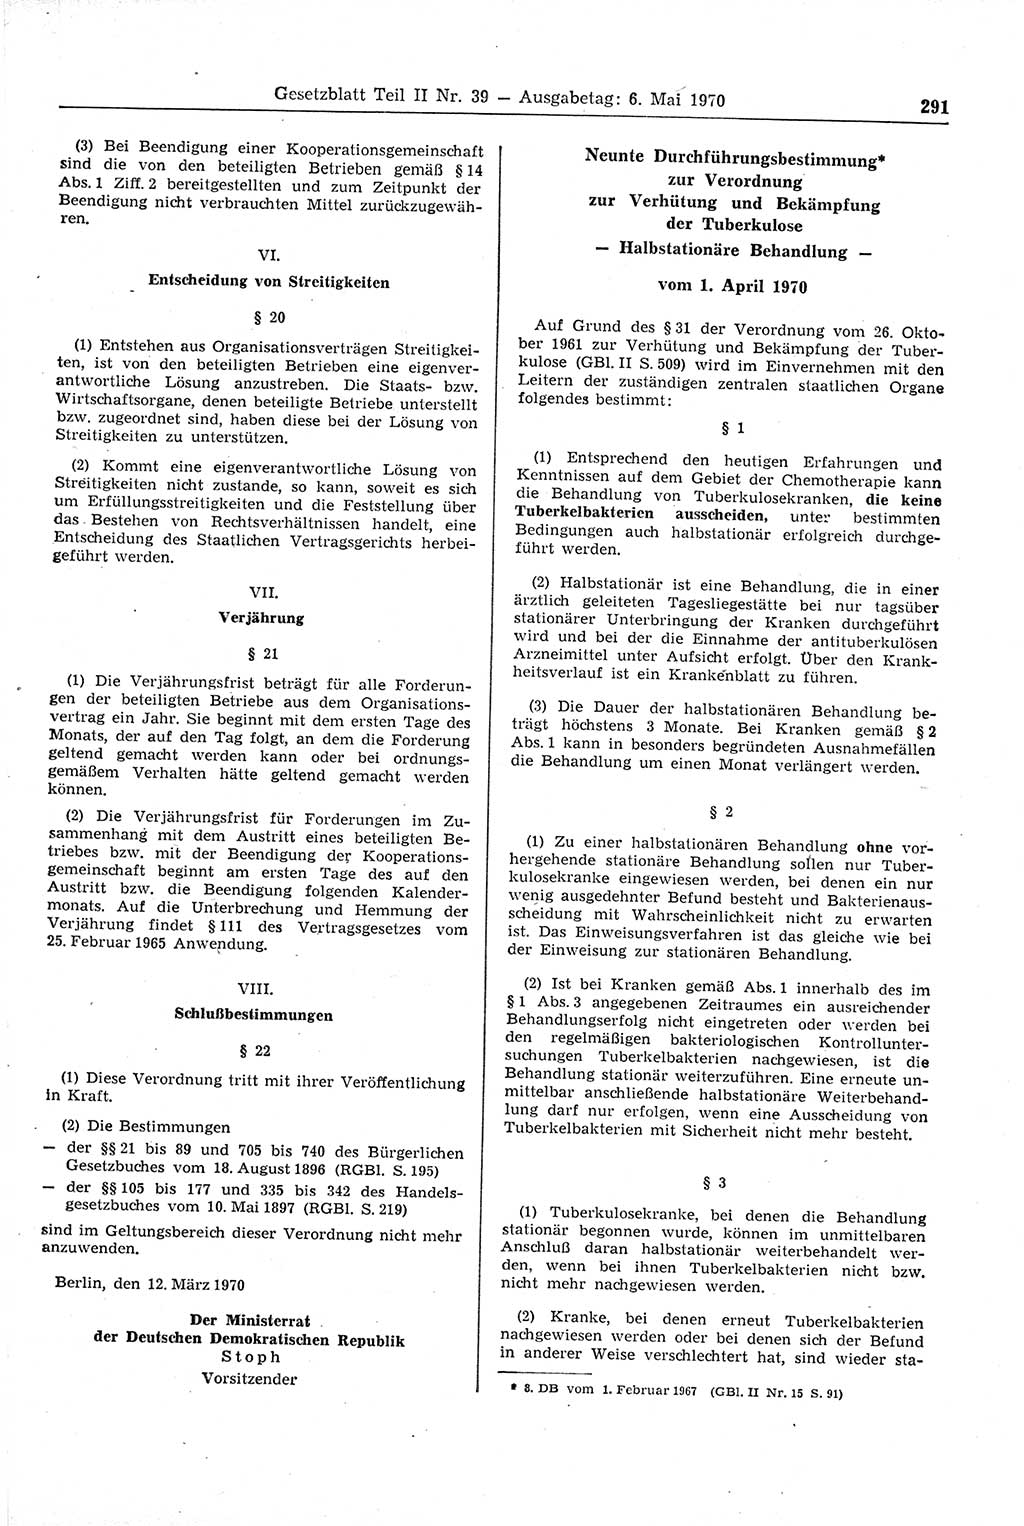 Gesetzblatt (GBl.) der Deutschen Demokratischen Republik (DDR) Teil ⅠⅠ 1970, Seite 291 (GBl. DDR ⅠⅠ 1970, S. 291)